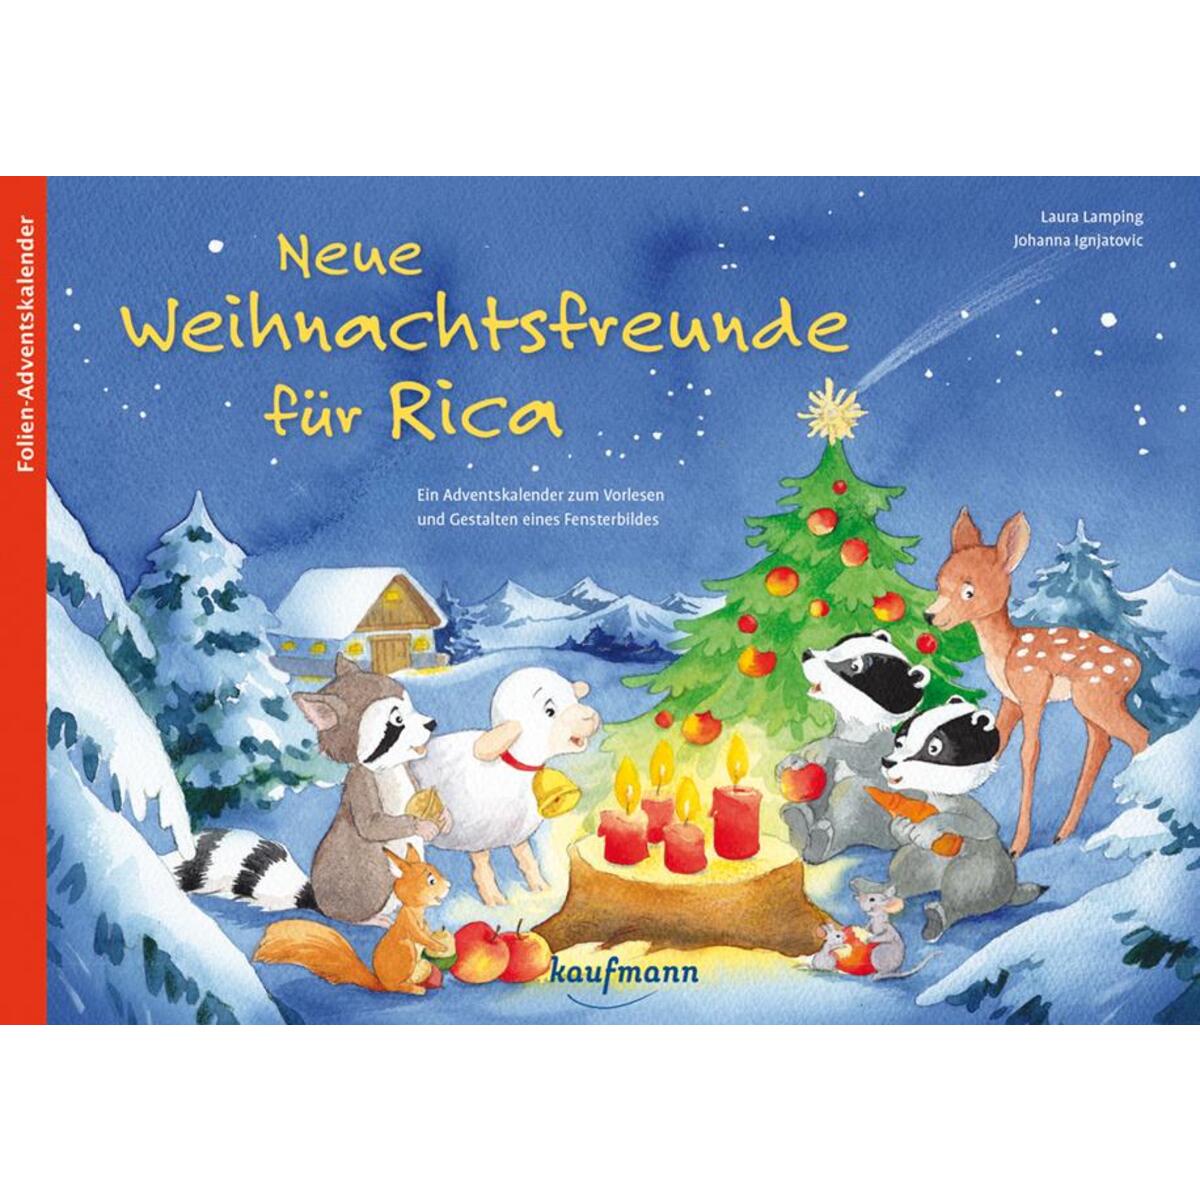 Neue Weihnachtsfreunde für Rica von Kaufmann Ernst Vlg GmbH